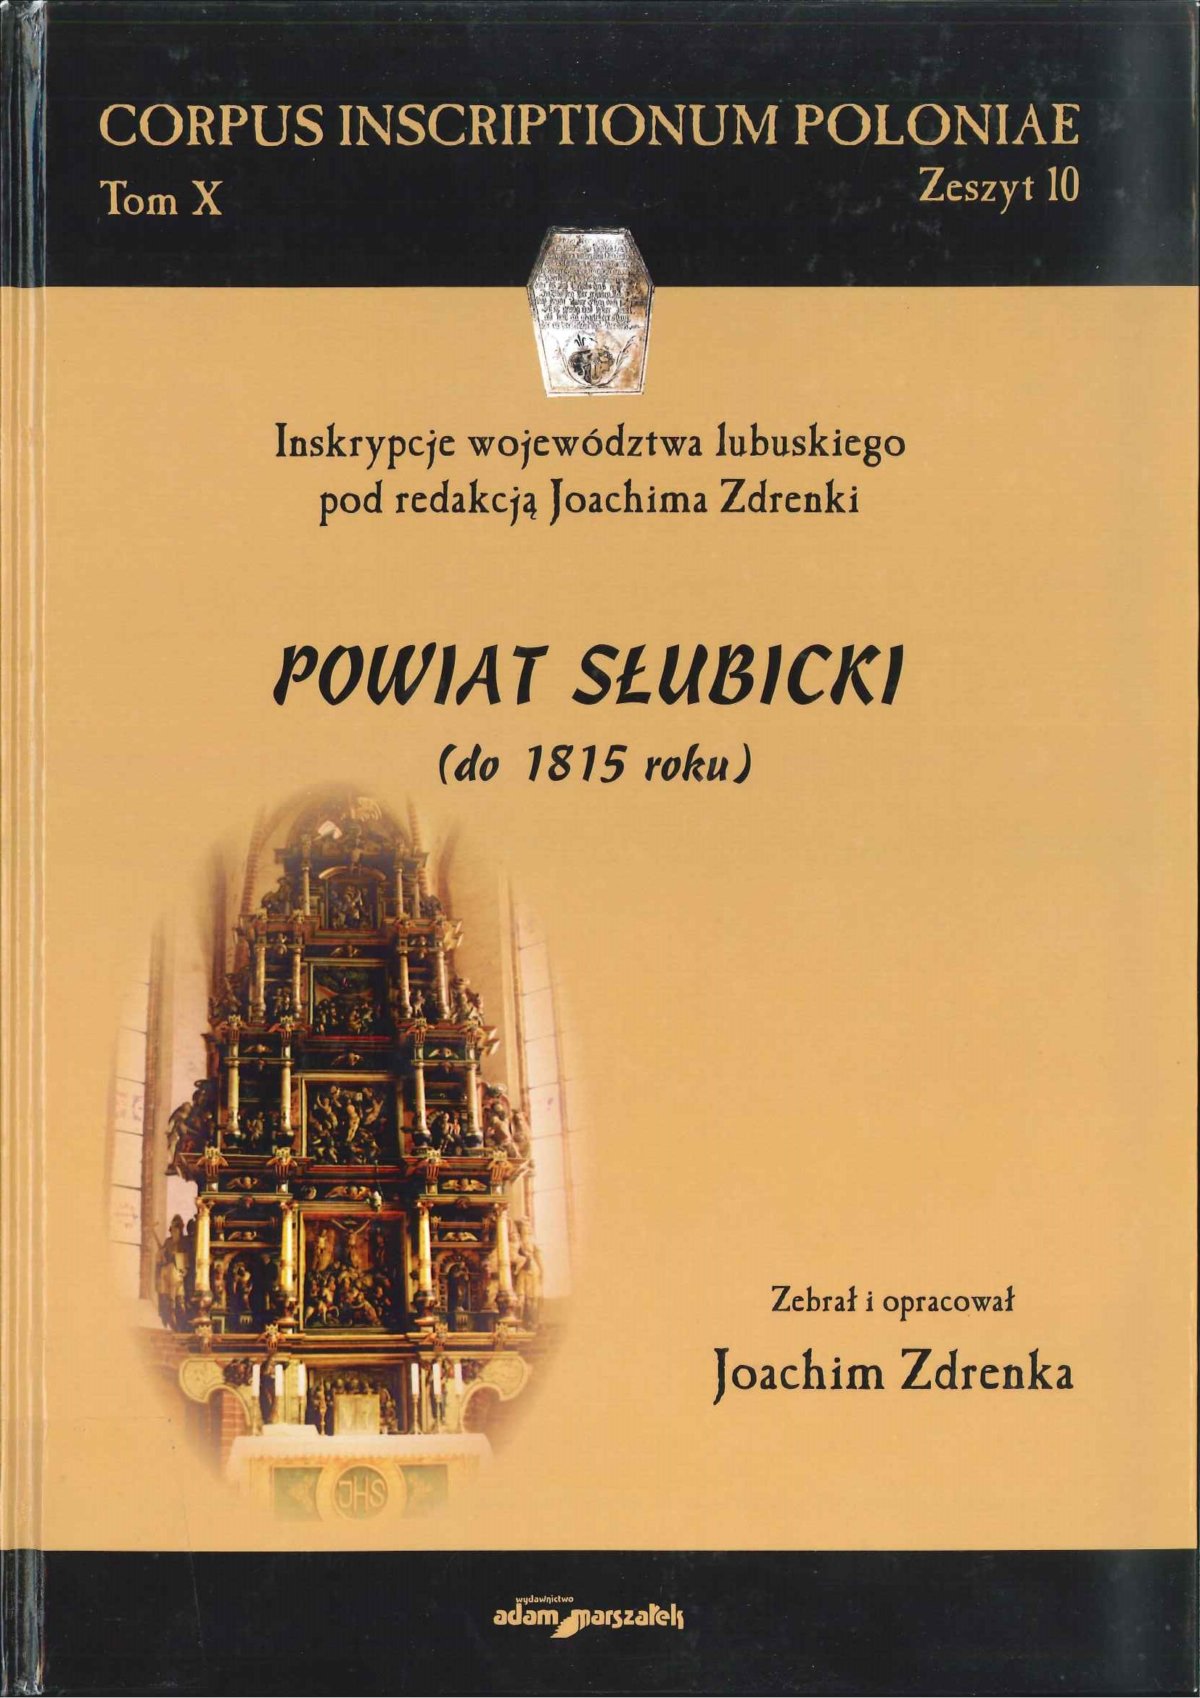 „Powiat słubicki (do 1815 r.), oprac. Joachim Zdrenka, cykl Corpus Inscriptionum Poloniae, tom 10. Wyd. Adam Marszałek, Toruń 2018.